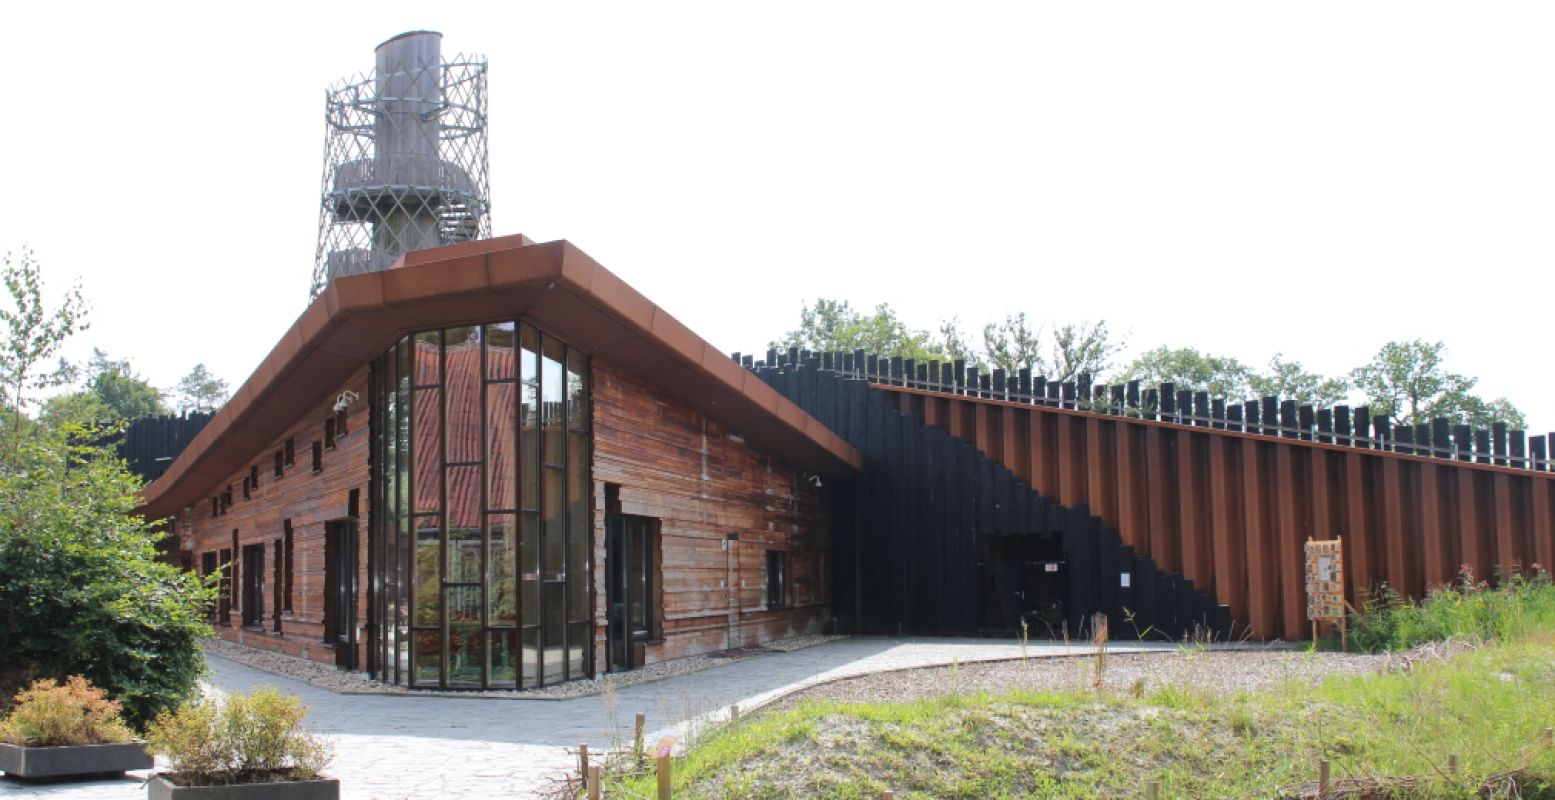 Het bijzondere gebouw van het Duurzaamheidscentrum Assen aan de rand van het Asserbos, gemaakt van gerecycled materiaal. Foto: DagjeWeg.NL.